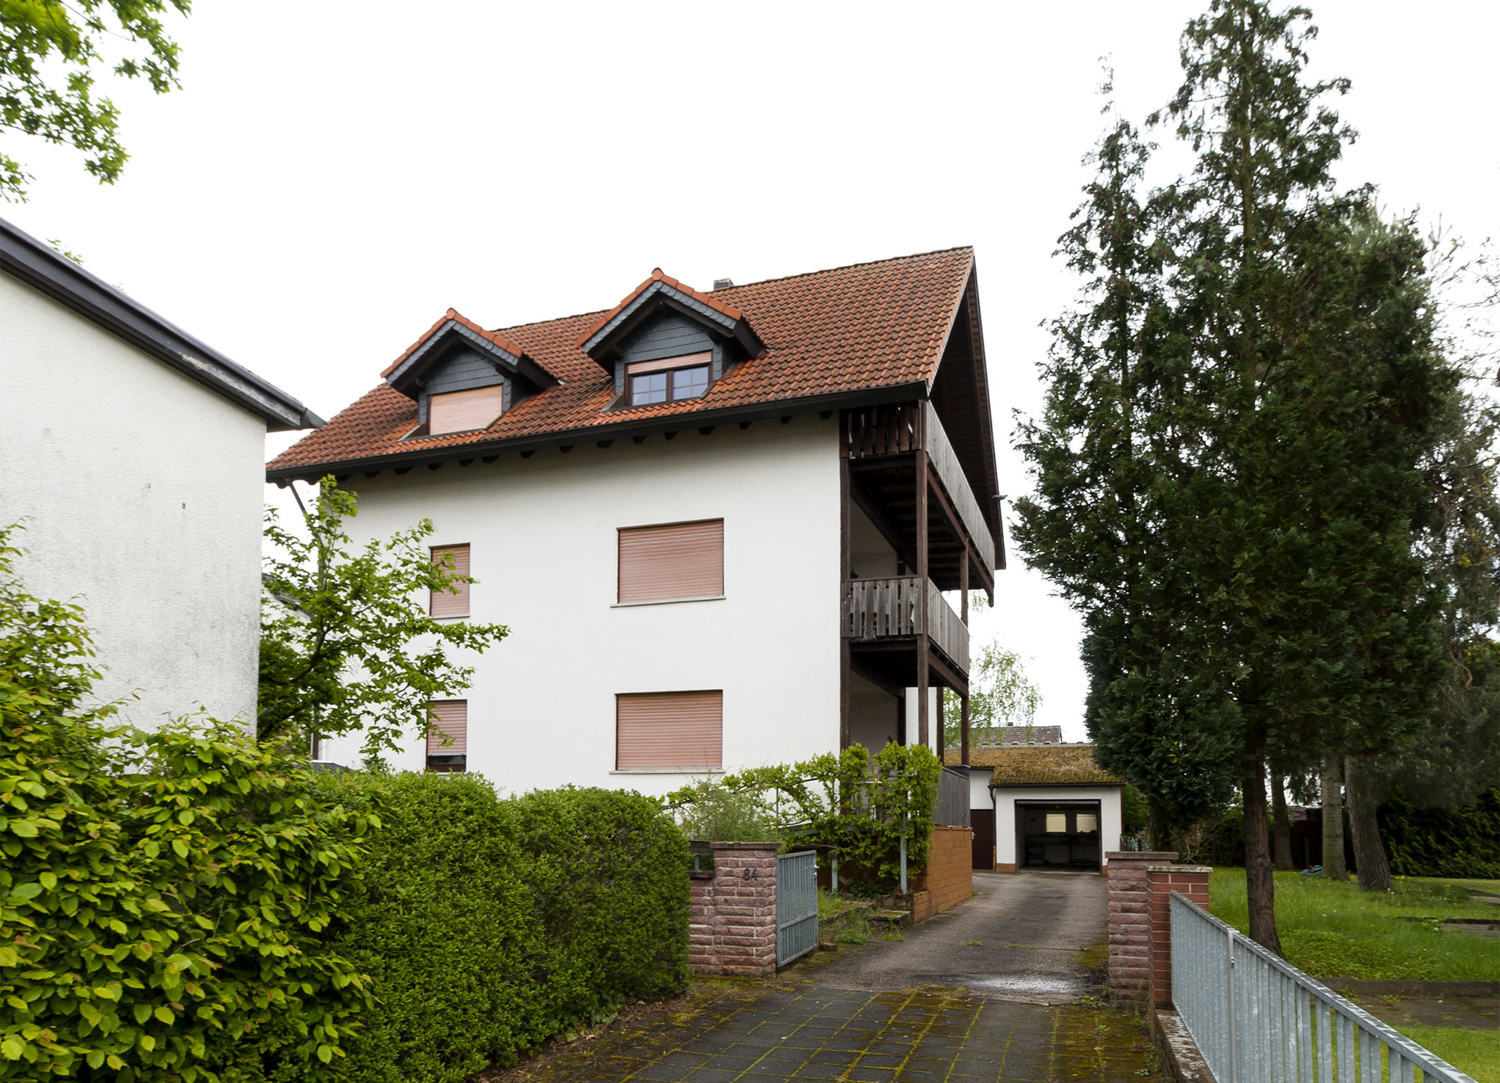 Größeres 2-Familienhaus mit Maisonette-Wohnung in schöner Lage von Arheilgen